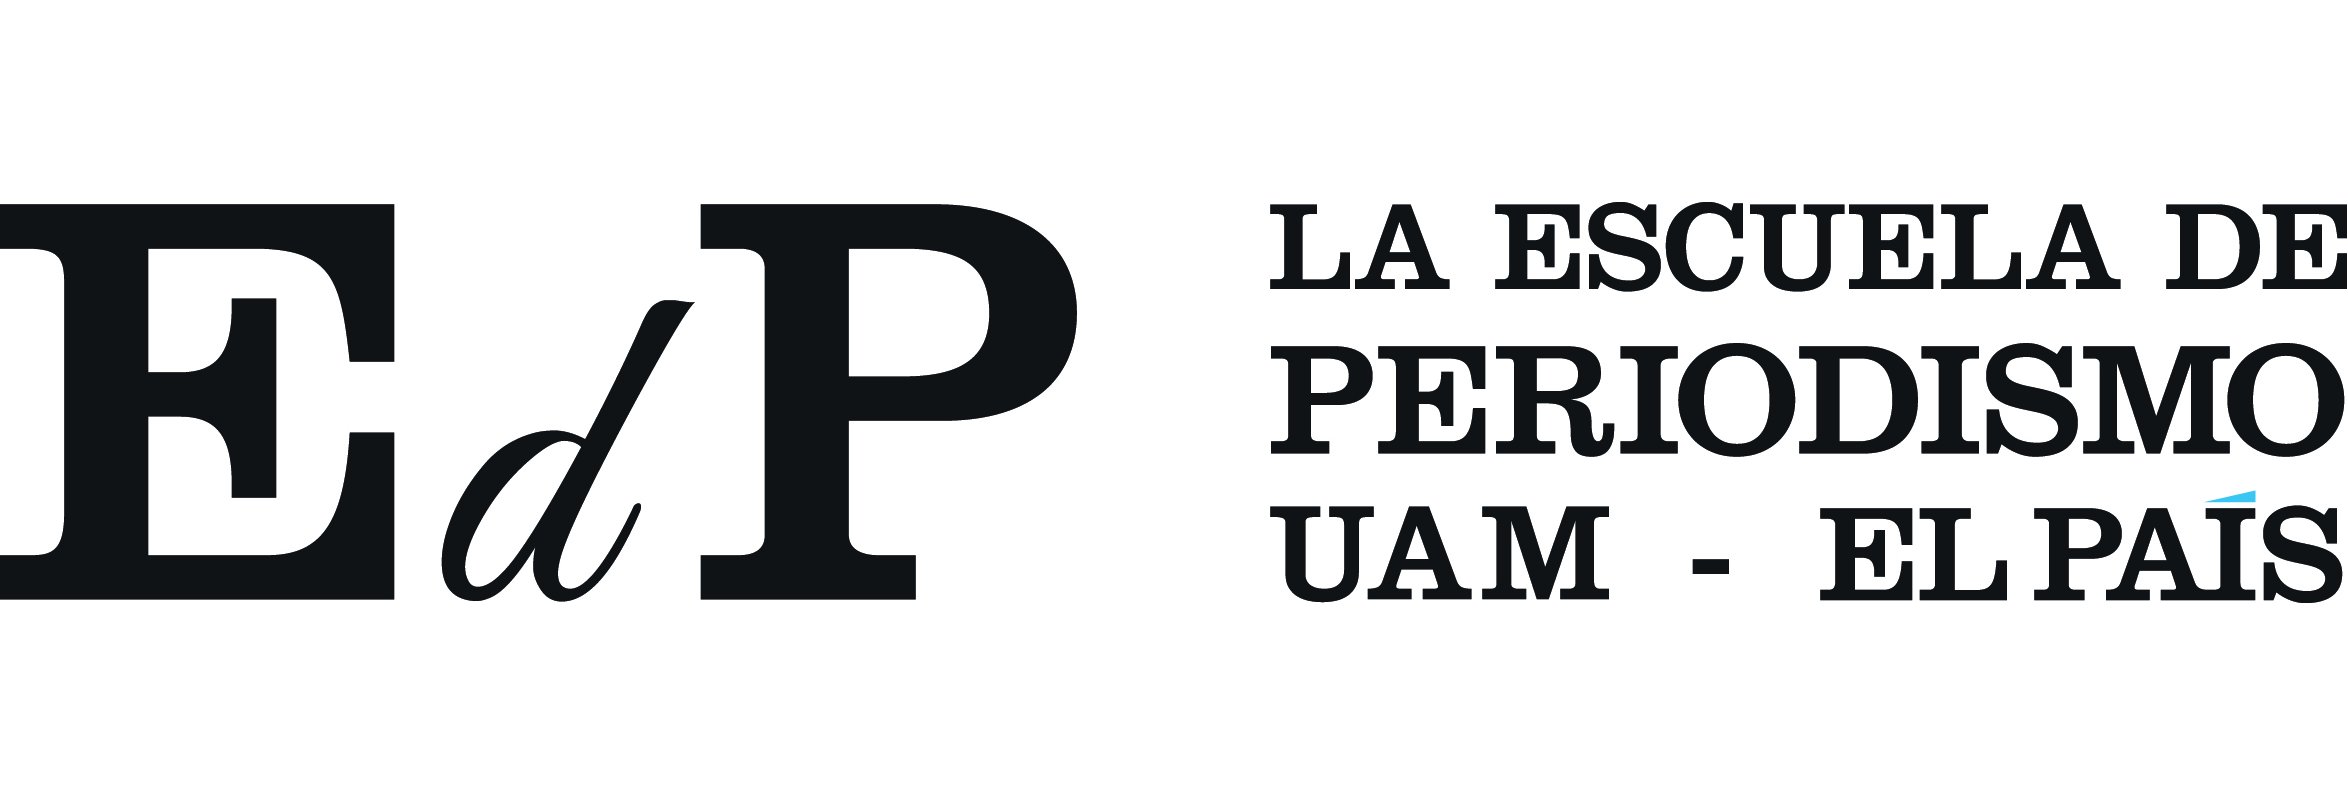 Escuela de Periodismo UAM - El País